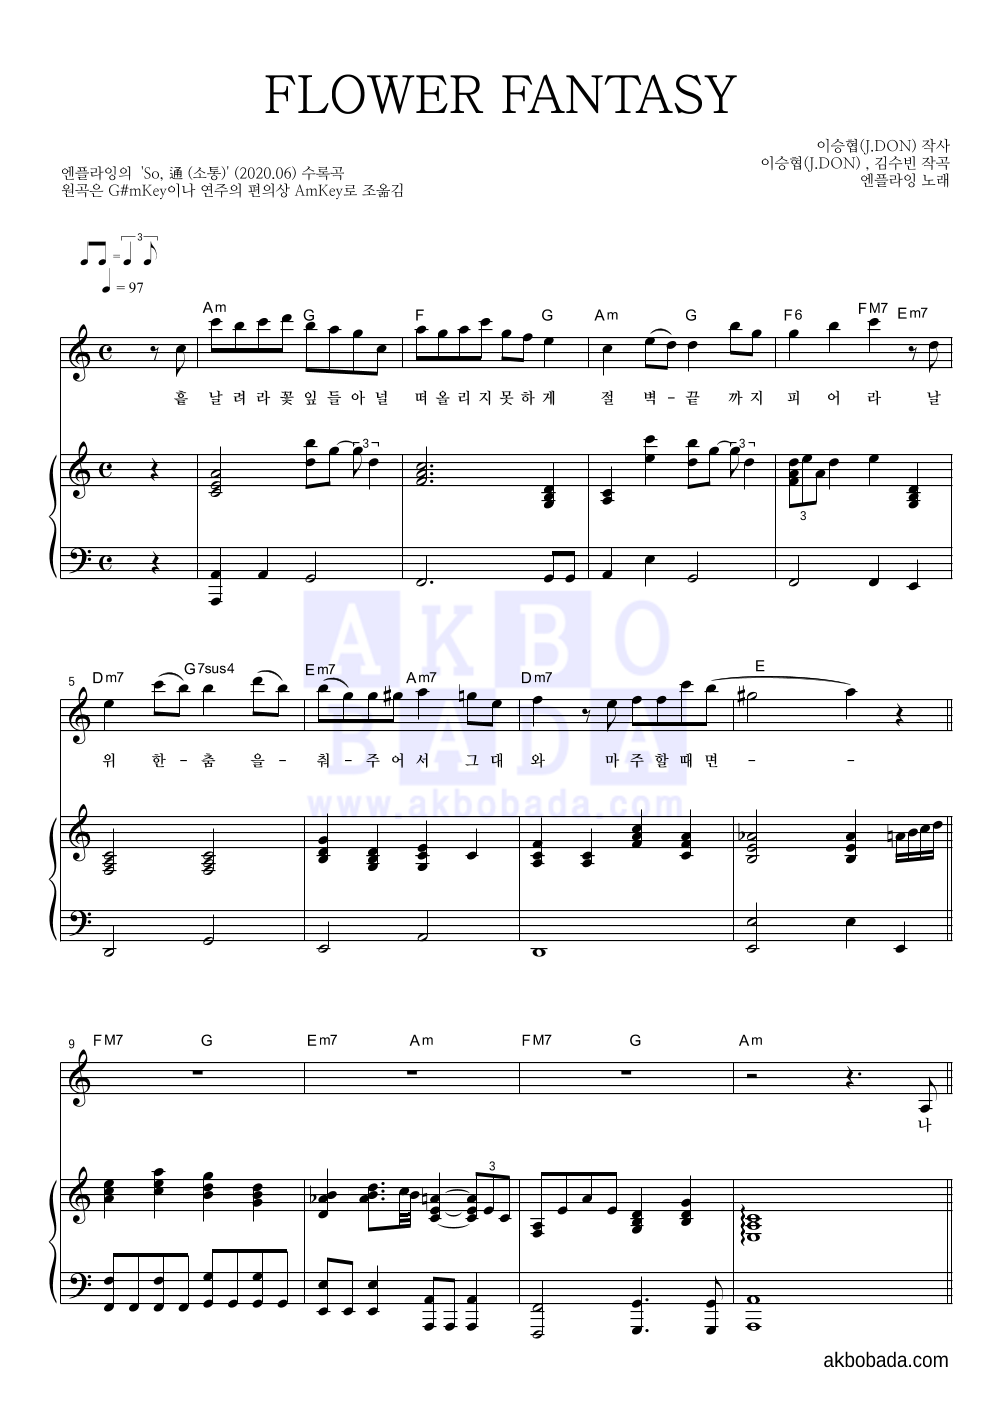 엔플라잉 - FLOWER FANTASY 피아노 3단 악보 